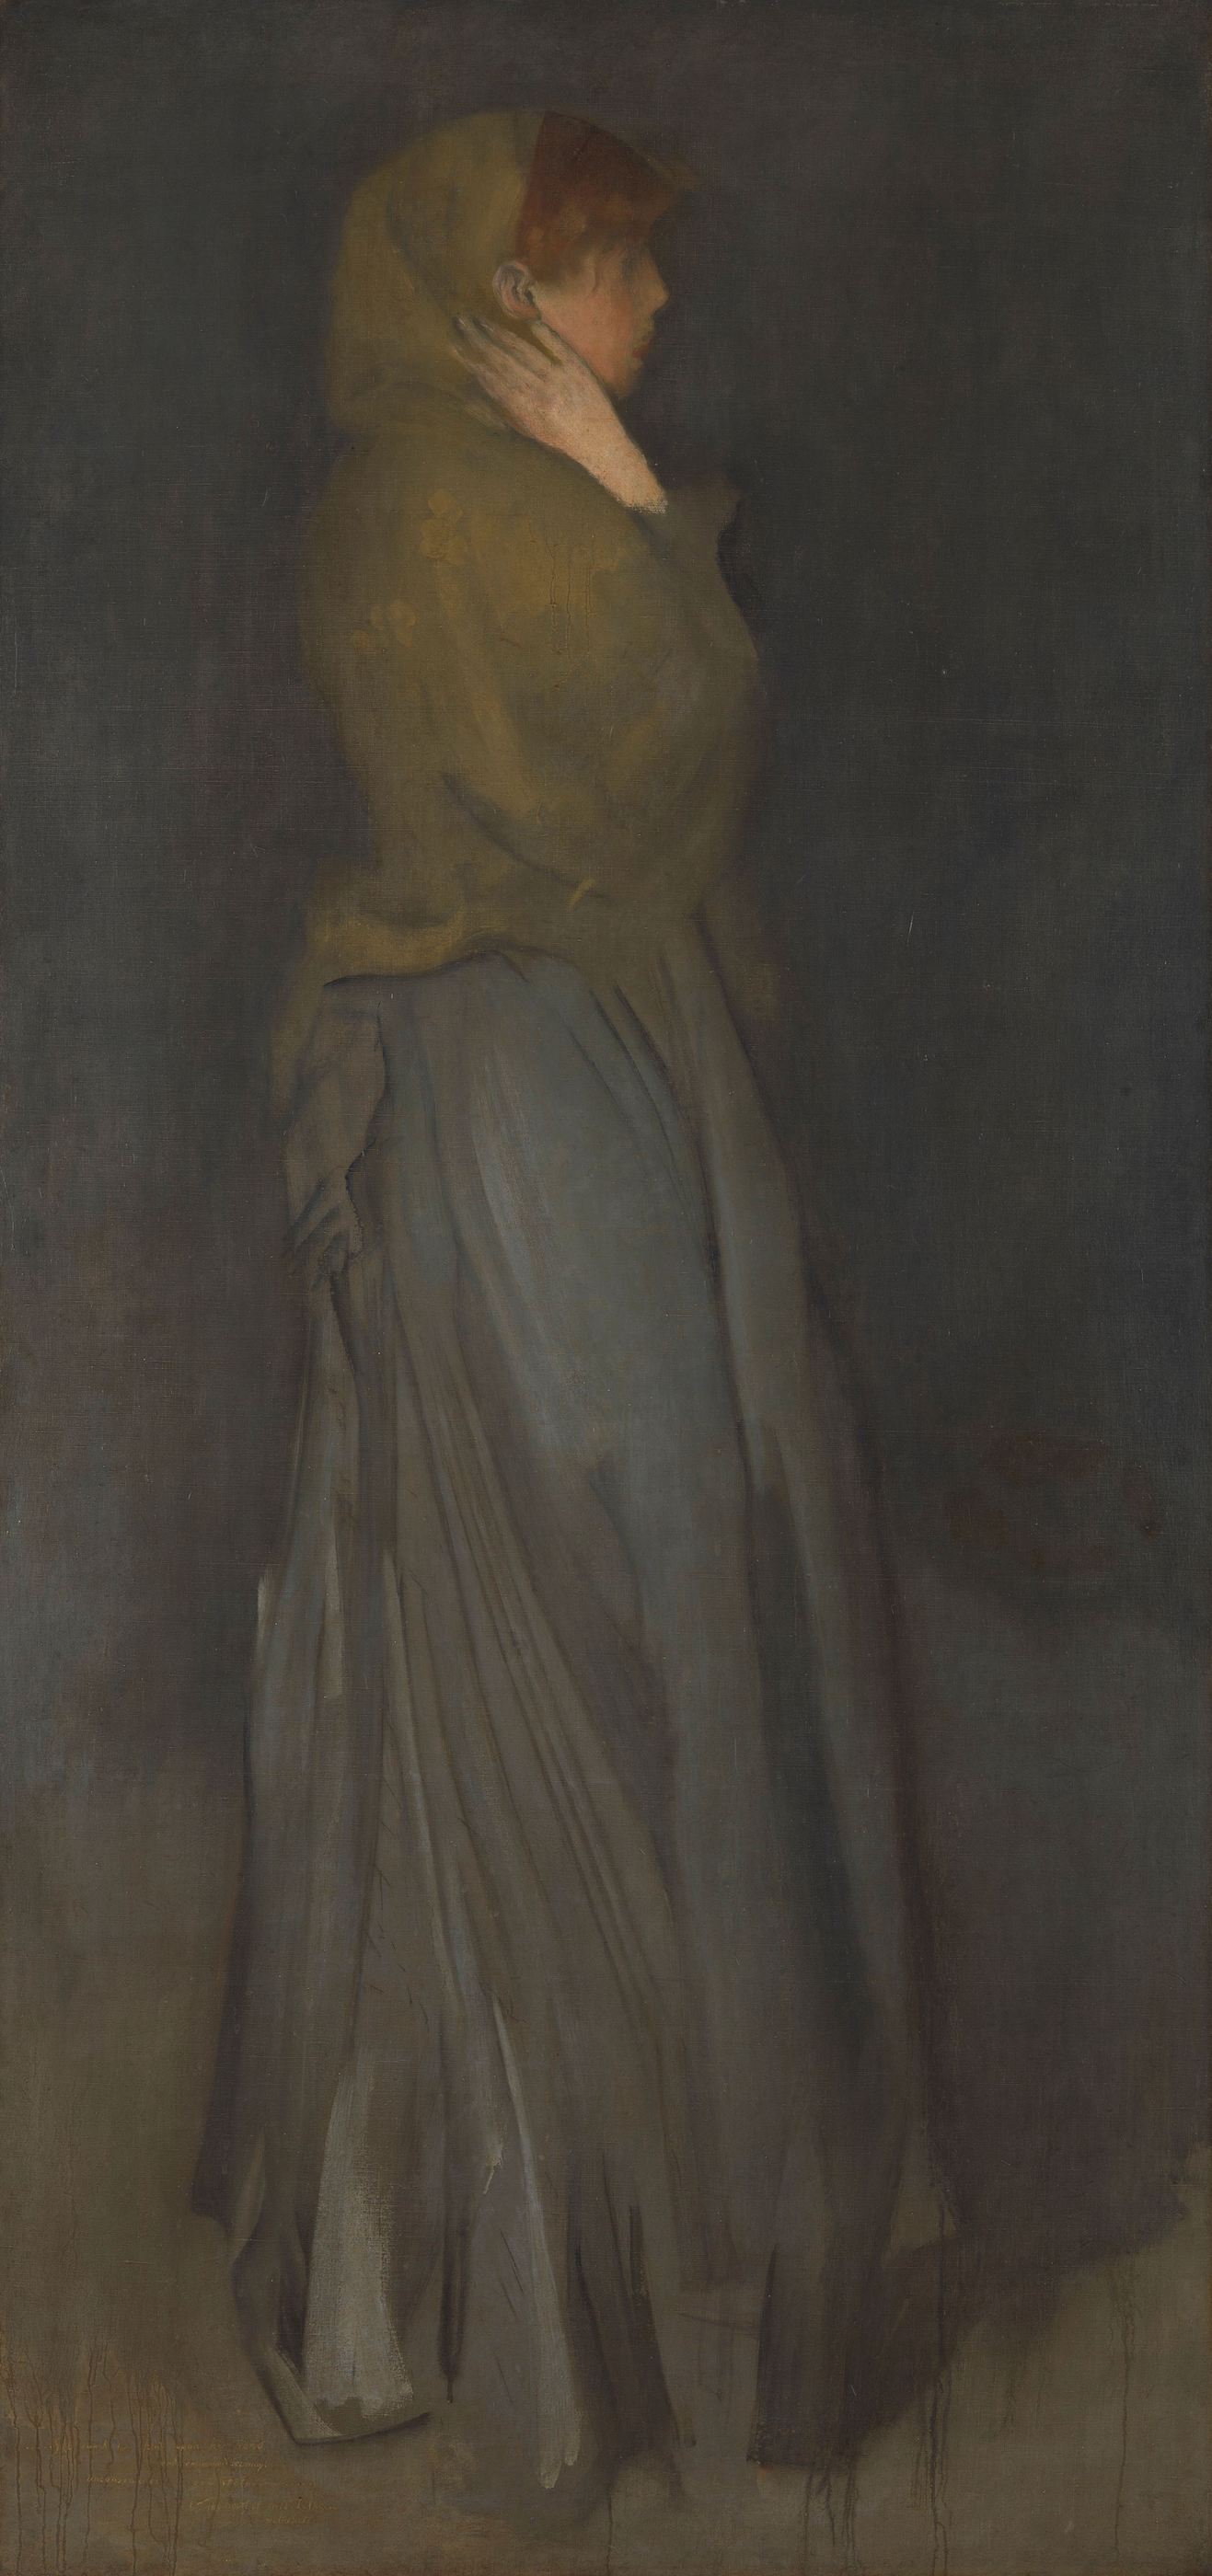 تشكيل بالأصفر و الرمادي : إيفي دينز by James Abbott McNeill Whistler - 1878 - 194 × 93  سم 